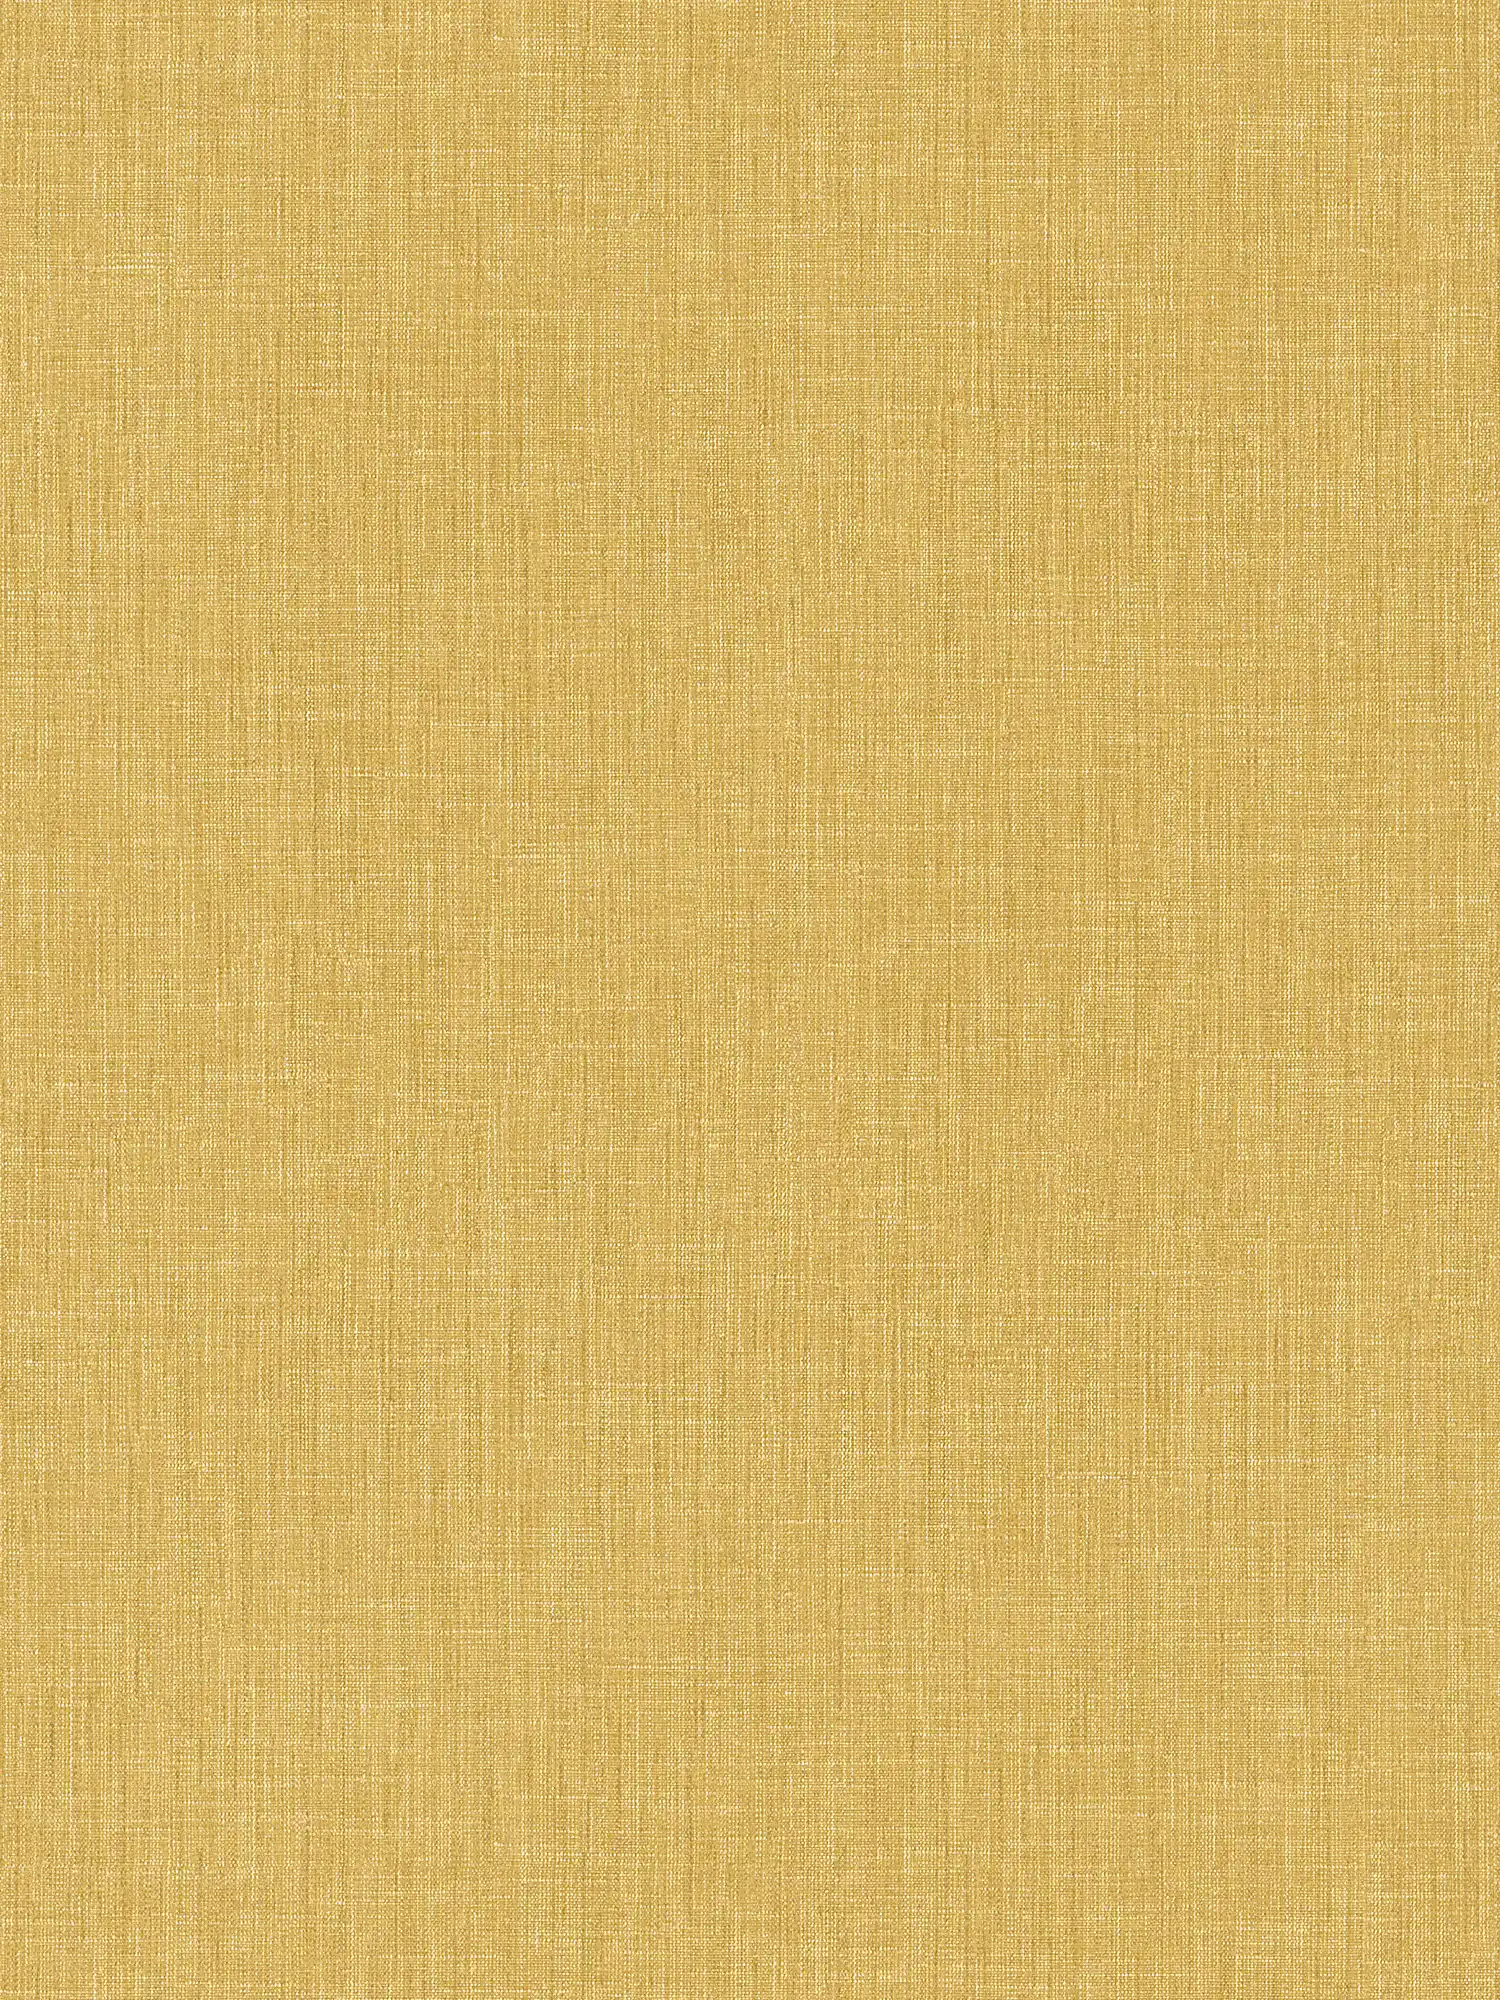 Carta da parati liscia con struttura tessile - giallo
